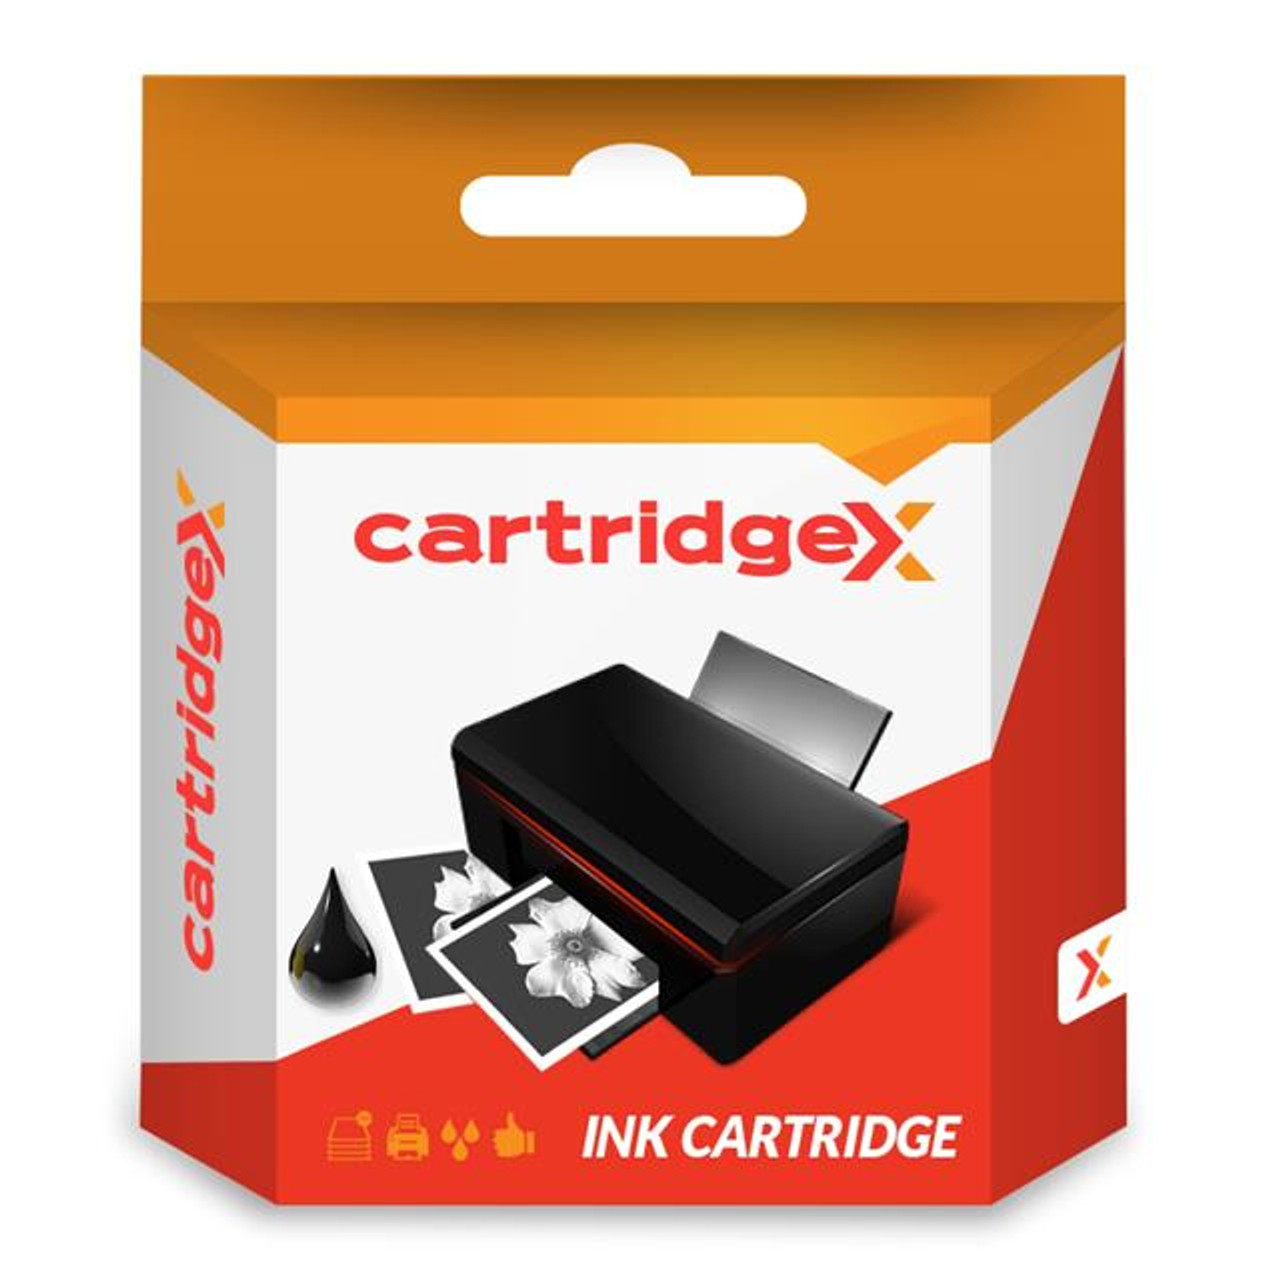 Compatible Black Ink Cartridge For Canon Pixma Mp500 Mp530 Mp600 Mp600r Cli-8 Bk